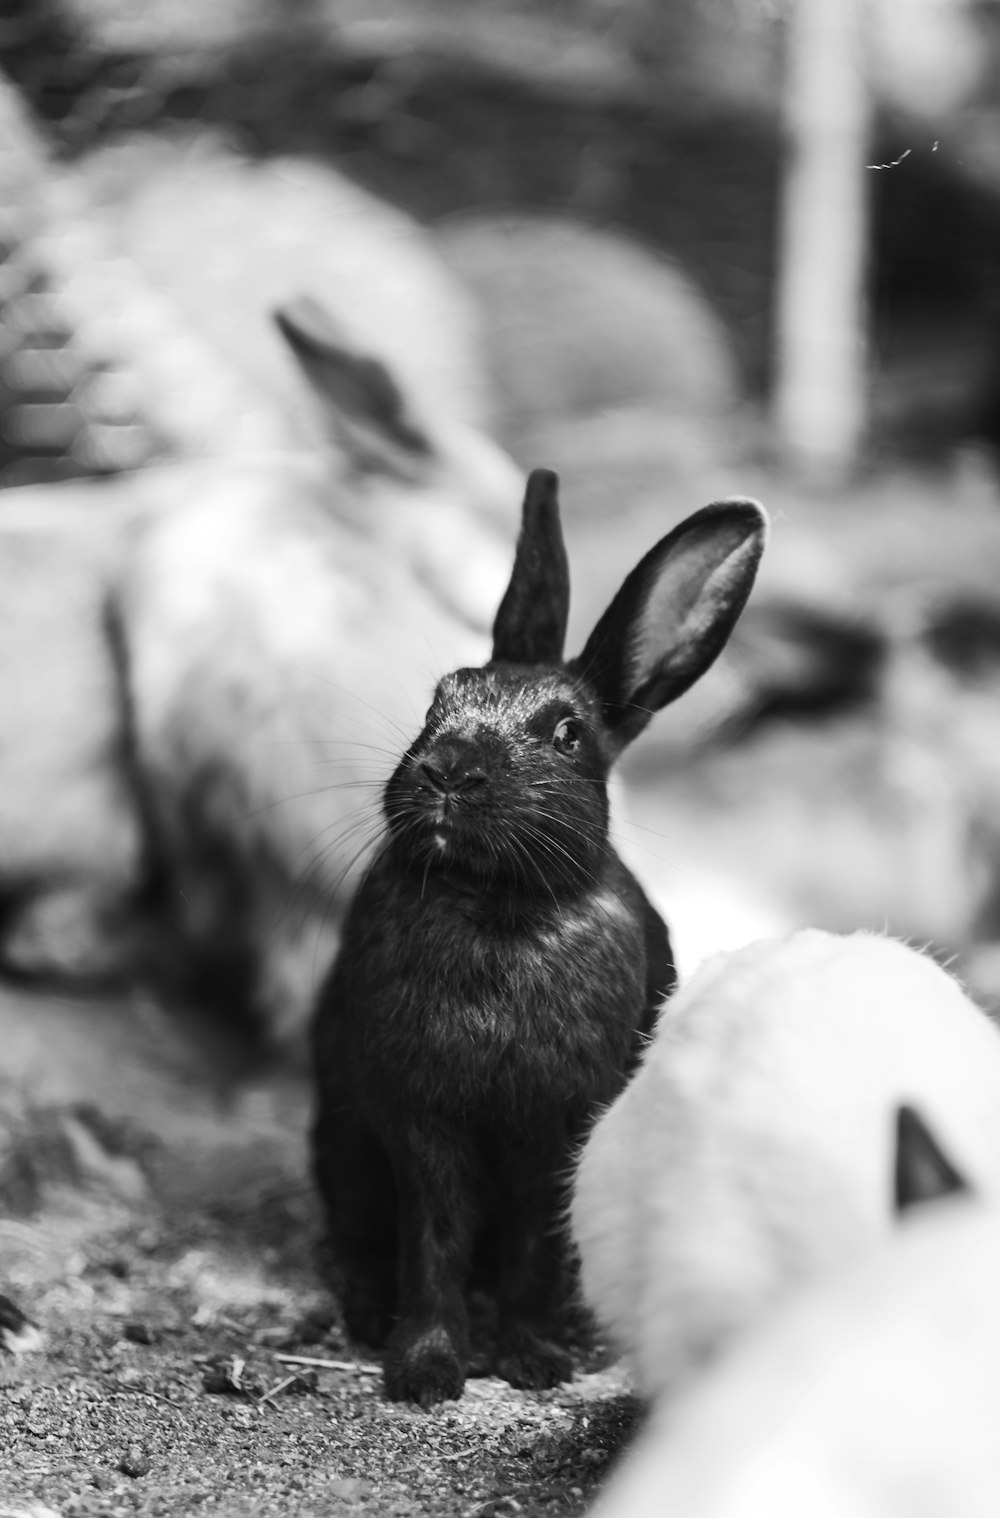 fotografia in scala di grigi del coniglio